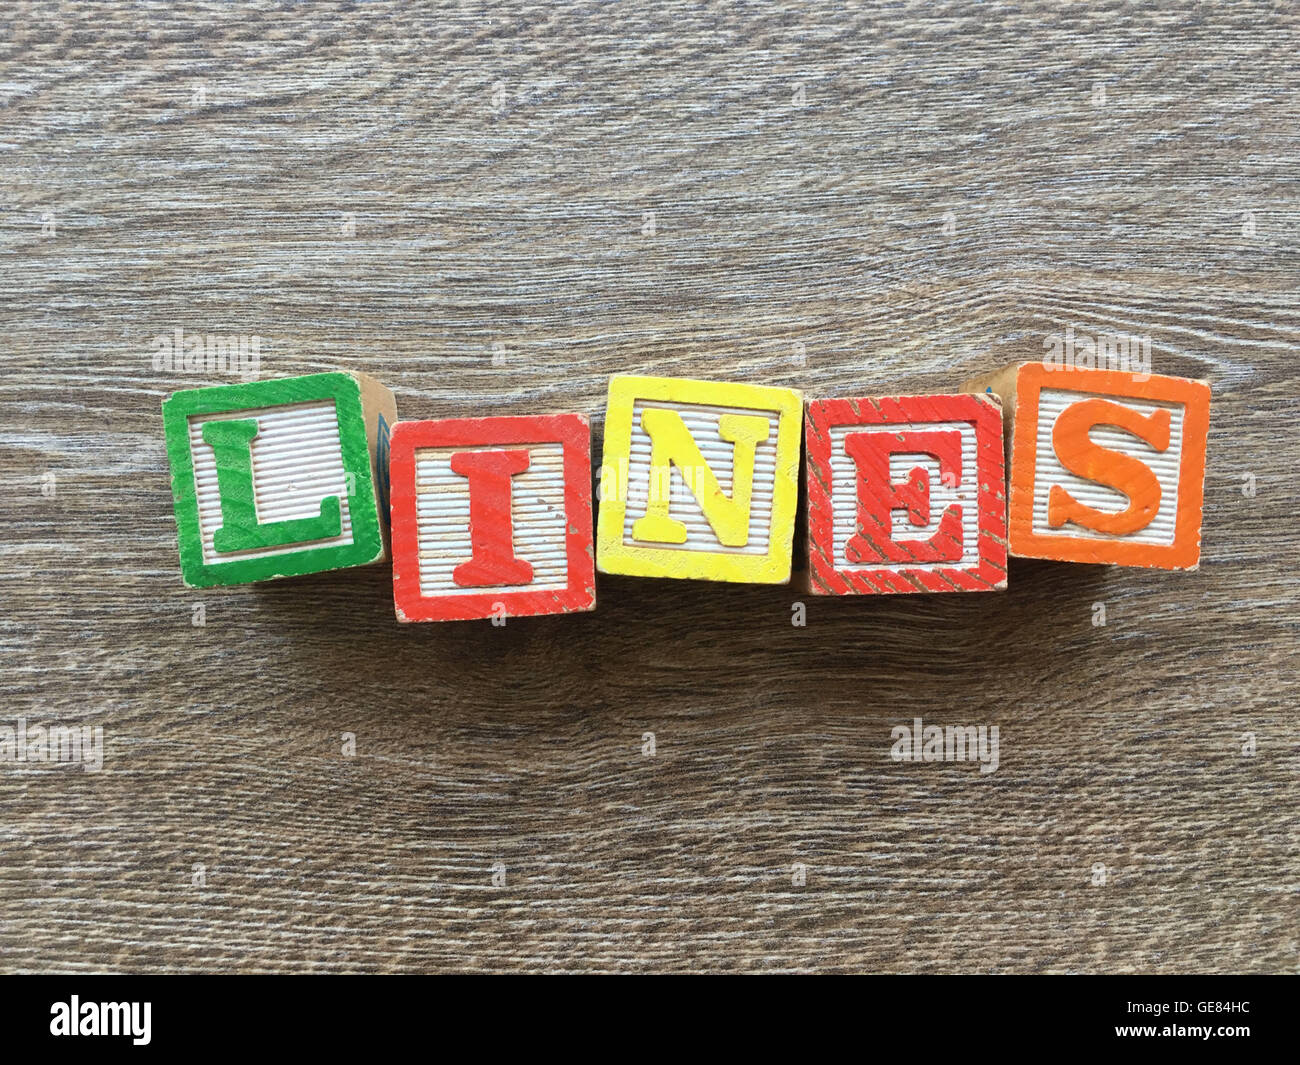 Holzblöcke oder hölzerne Würfel Spielzeug mit Alphabet Buchstaben darauf kombiniert miteinander, um das Wort Linien Stockfoto